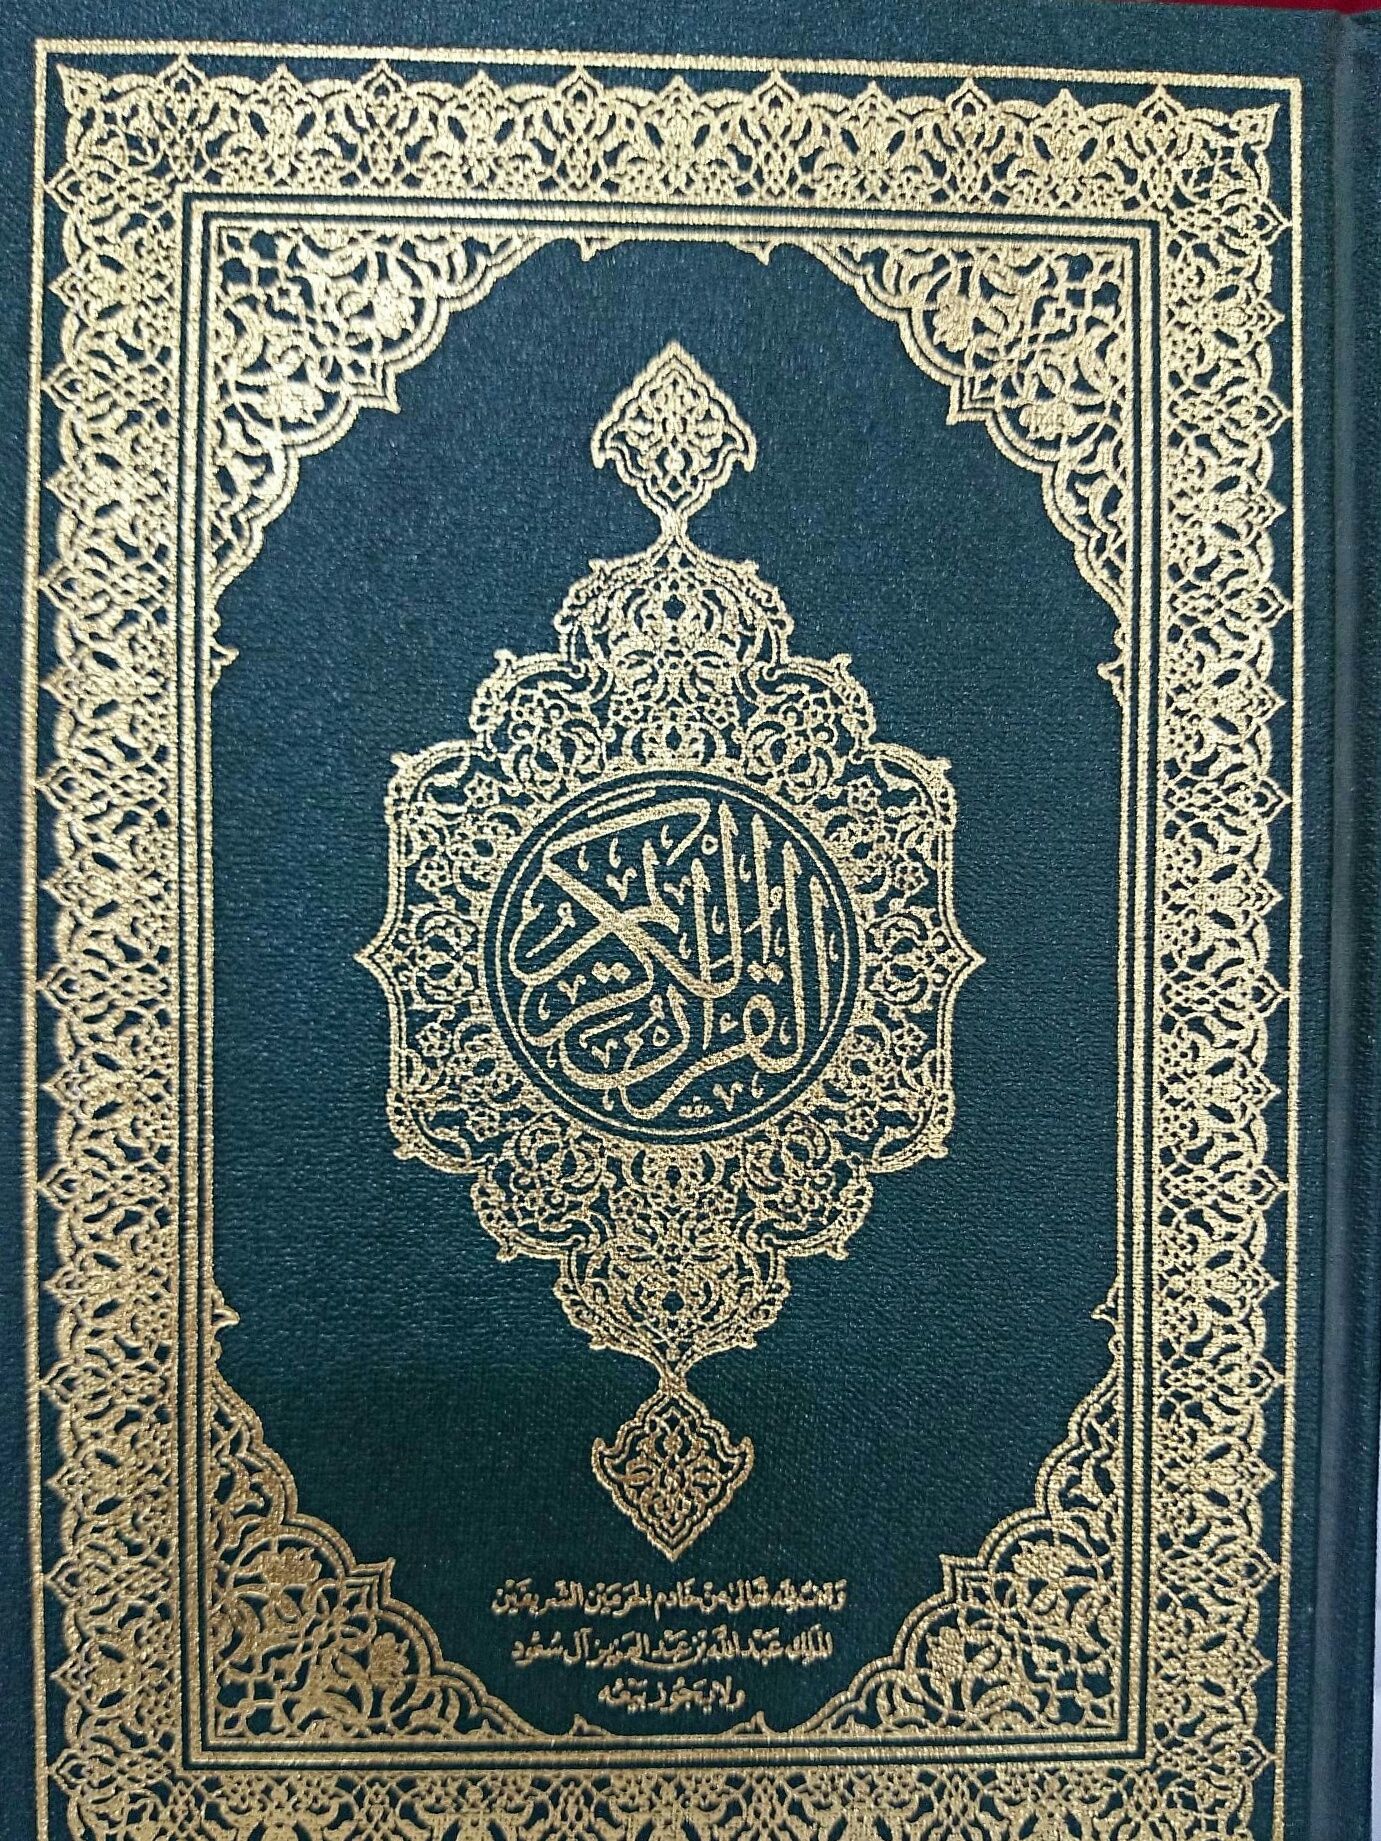 ¿Qué capítulos están incluidos en Juz' 3 del Corán?